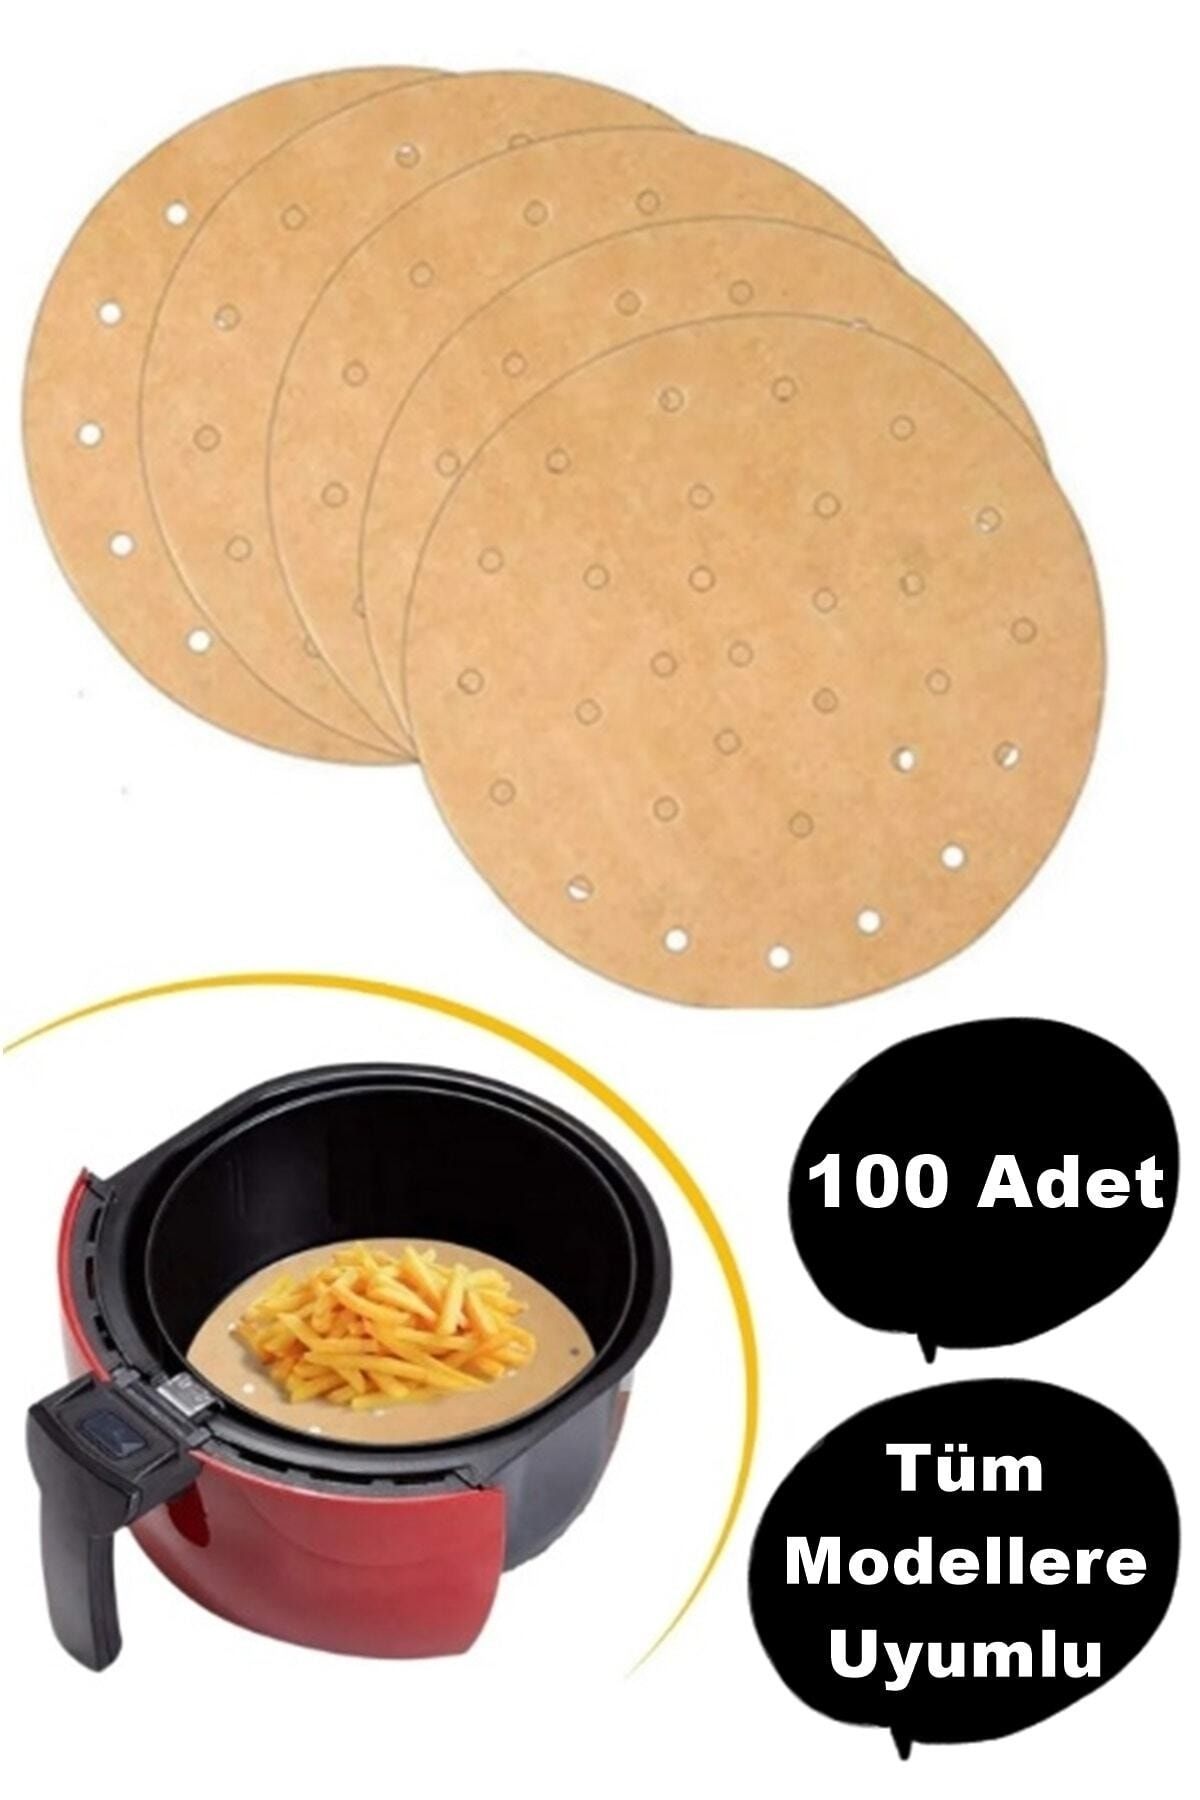 MUTLUHOME 100 Adet Air Fryer Pişirme Kağıdı Tek Kullanımlık Yağ Geçirmez Kağıt Yuvarlak Delikli Model Airfryer